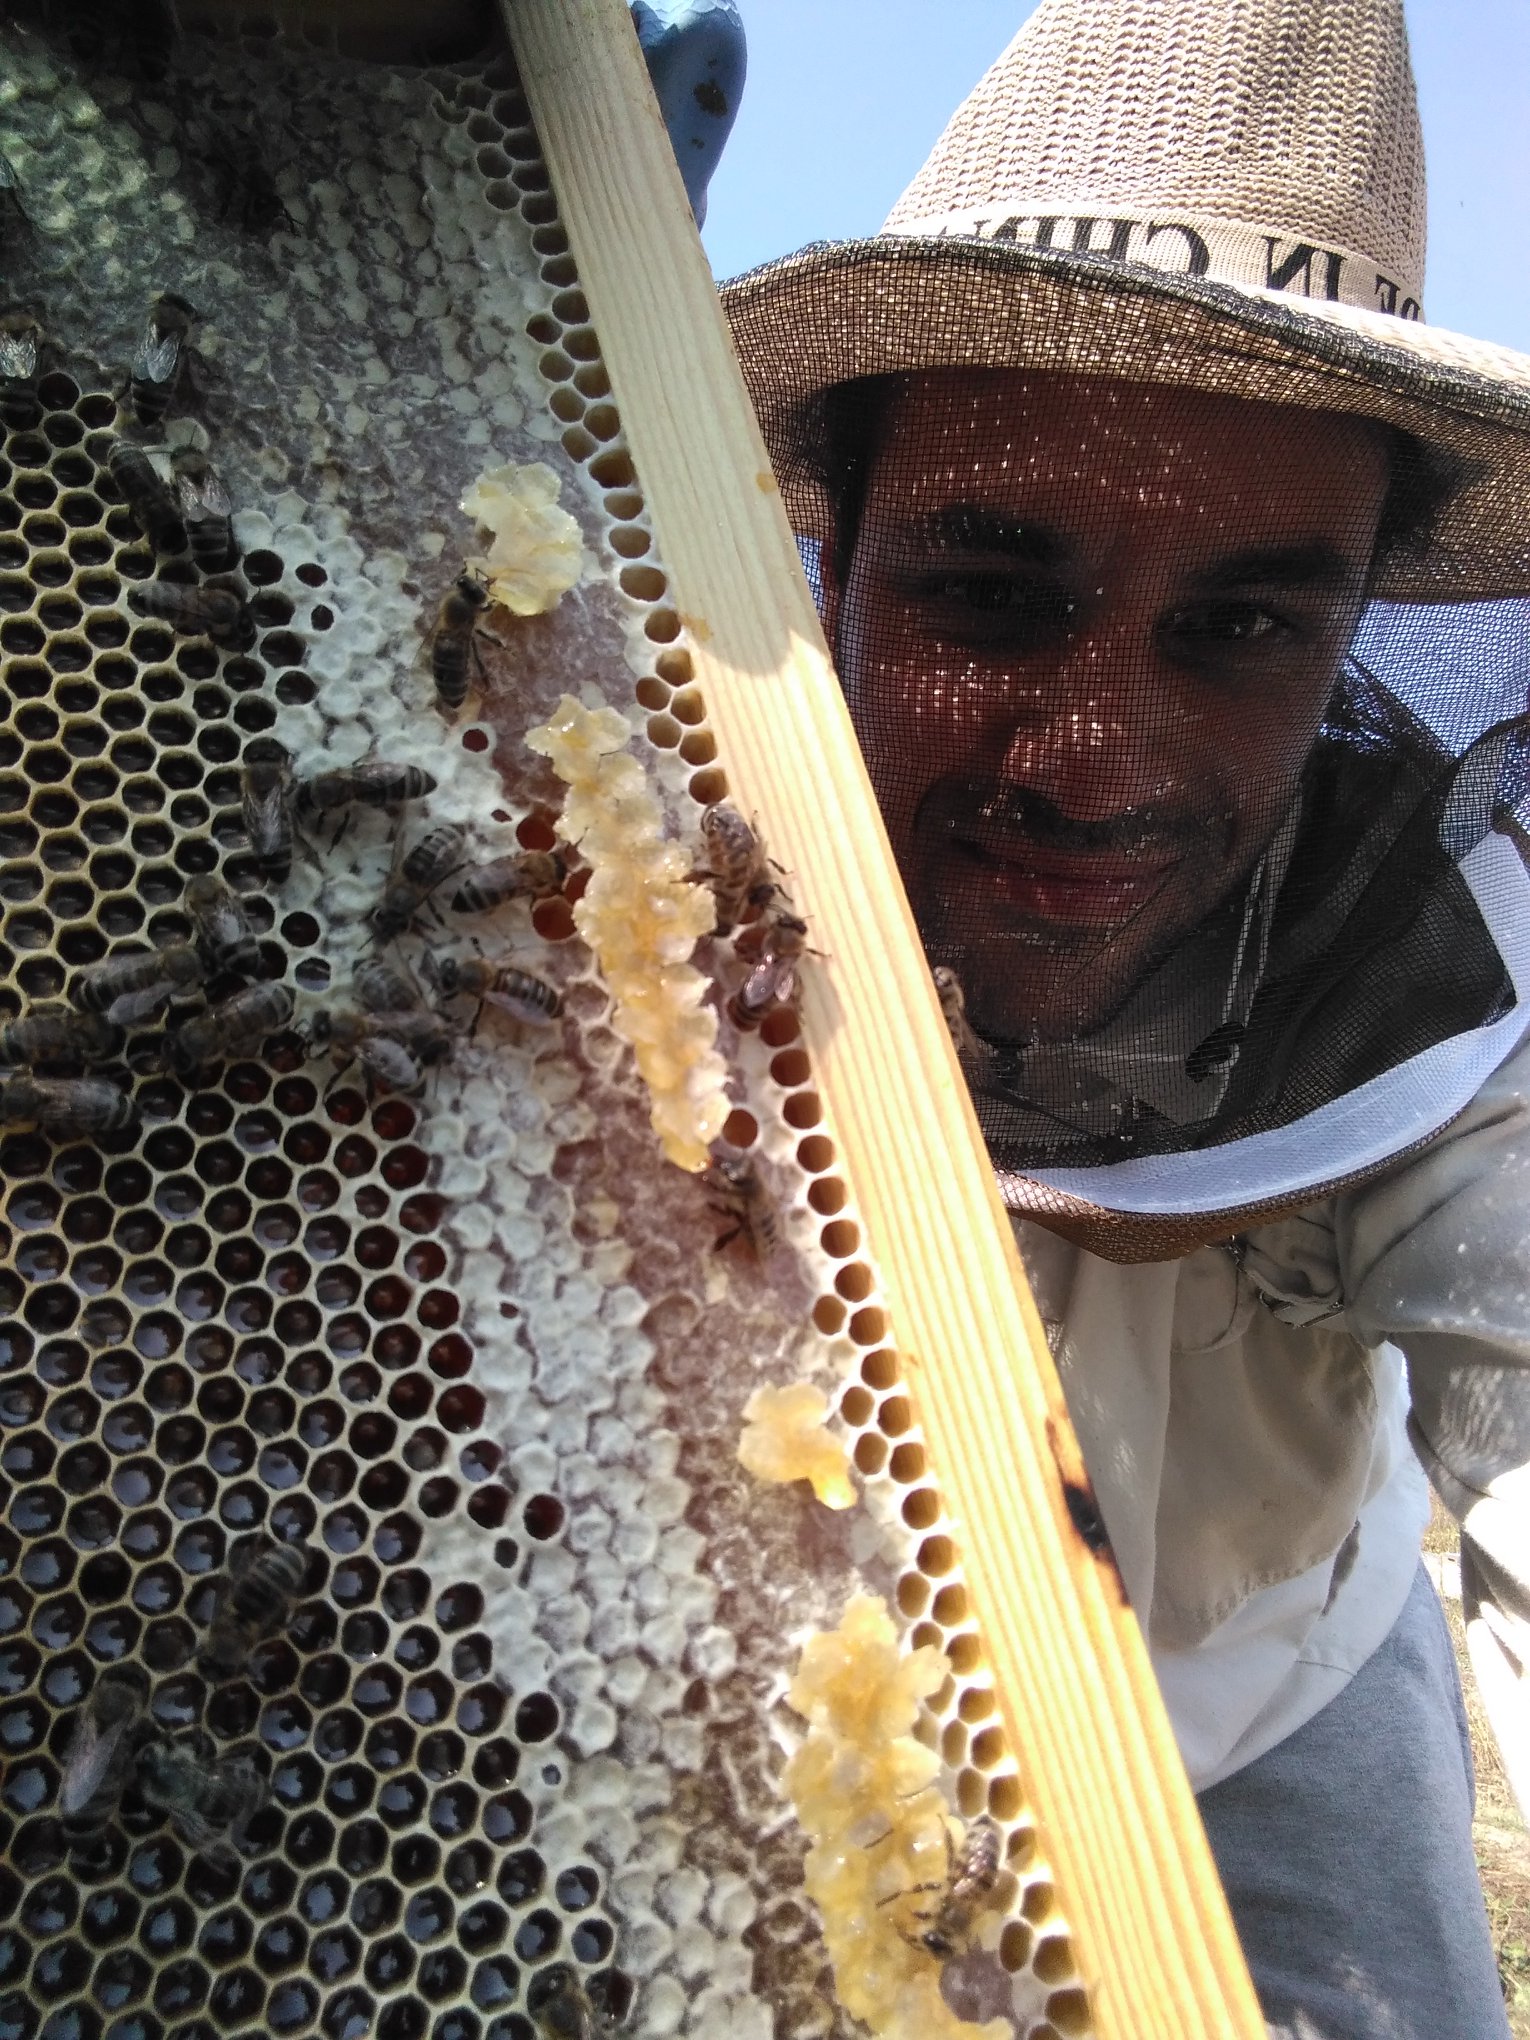 «Ακολούθησε τη μέλισσα!» Σταθμός 2ος: Μάθε για τη Μέλισσα, το πολυτιμότερο έμβιο ον στον πλανήτη, & πώς παράγονται τα βιολογικά προϊόντα της!